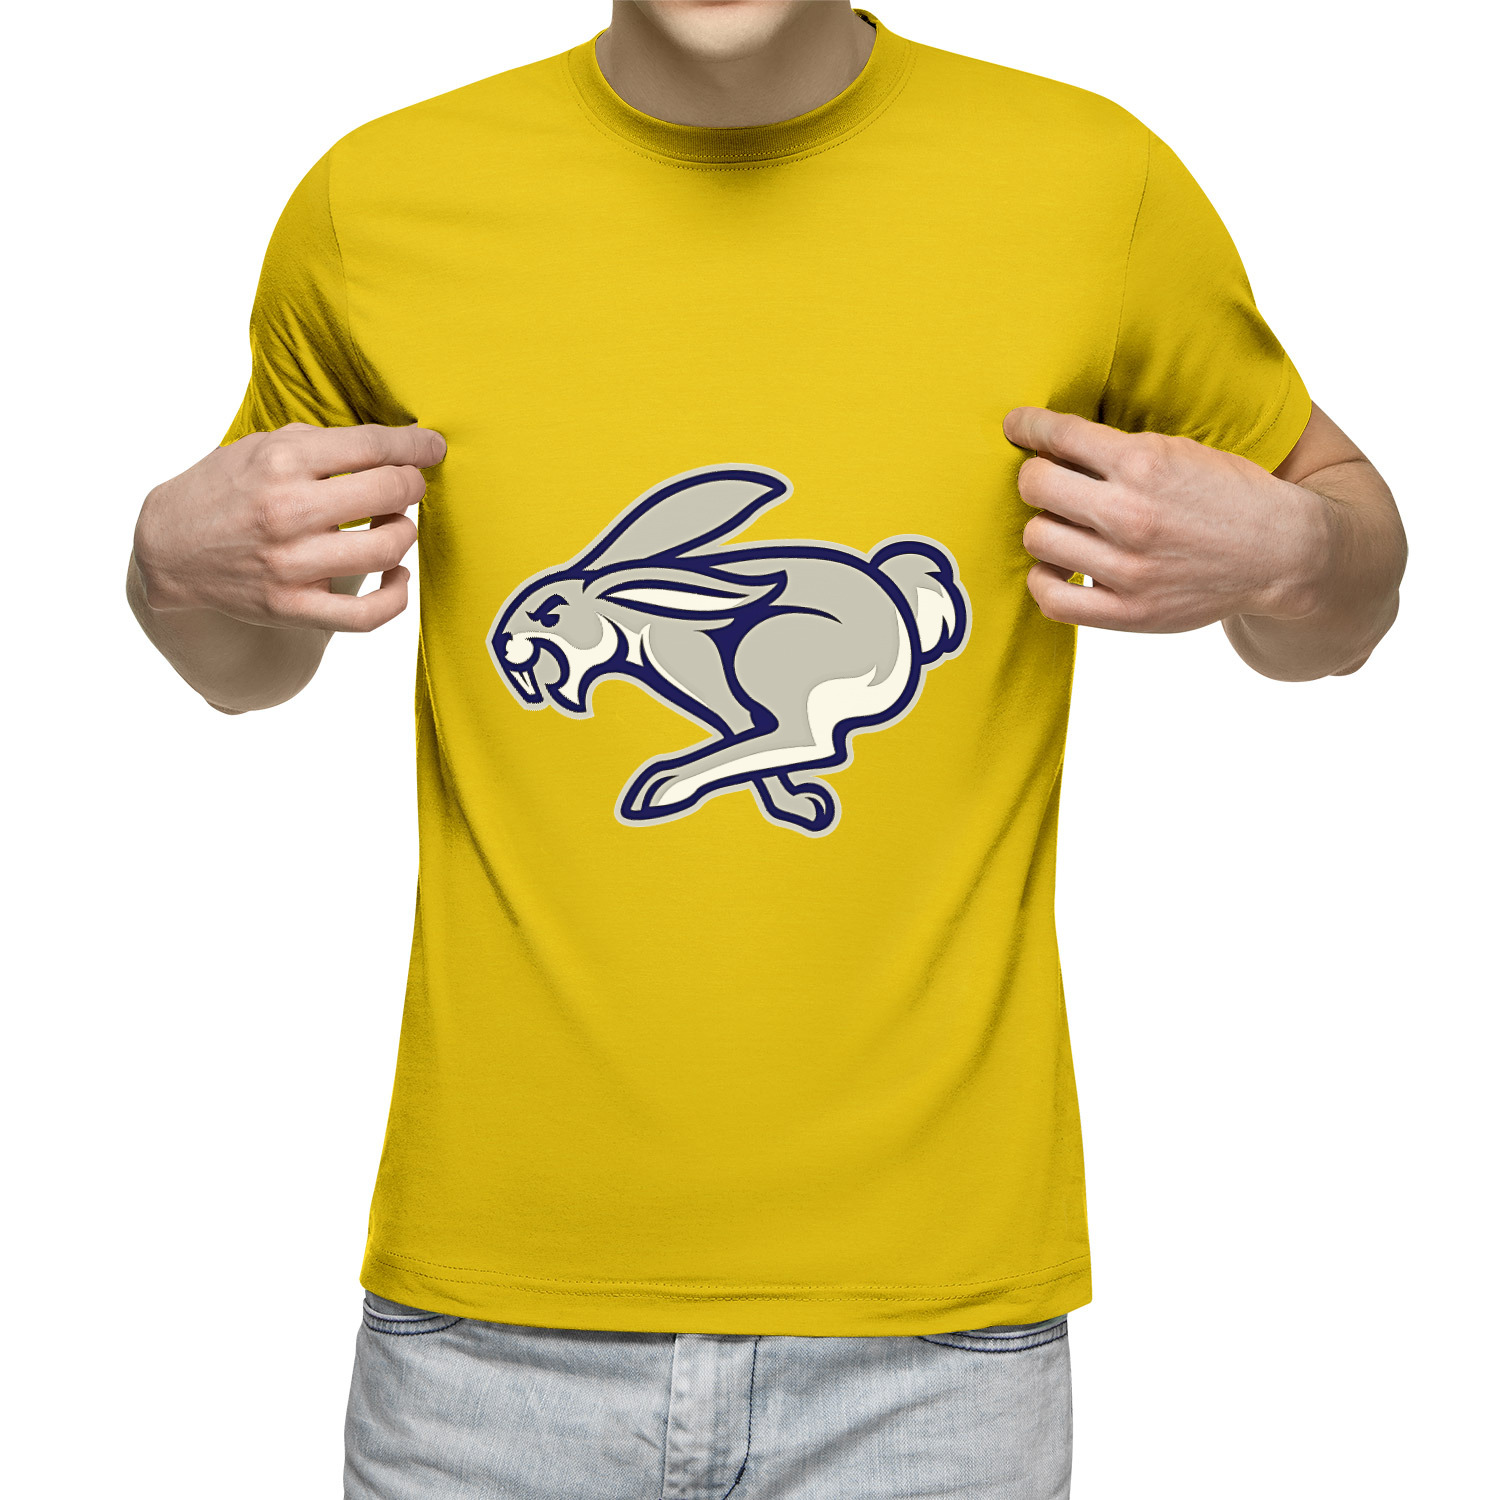 Странно но футболка сухая и совсем. Футболка бежим в будущее. Бегущий кролик бренд одежды. Майка беги герой 2024. Футболка бежим в будущее марафон.